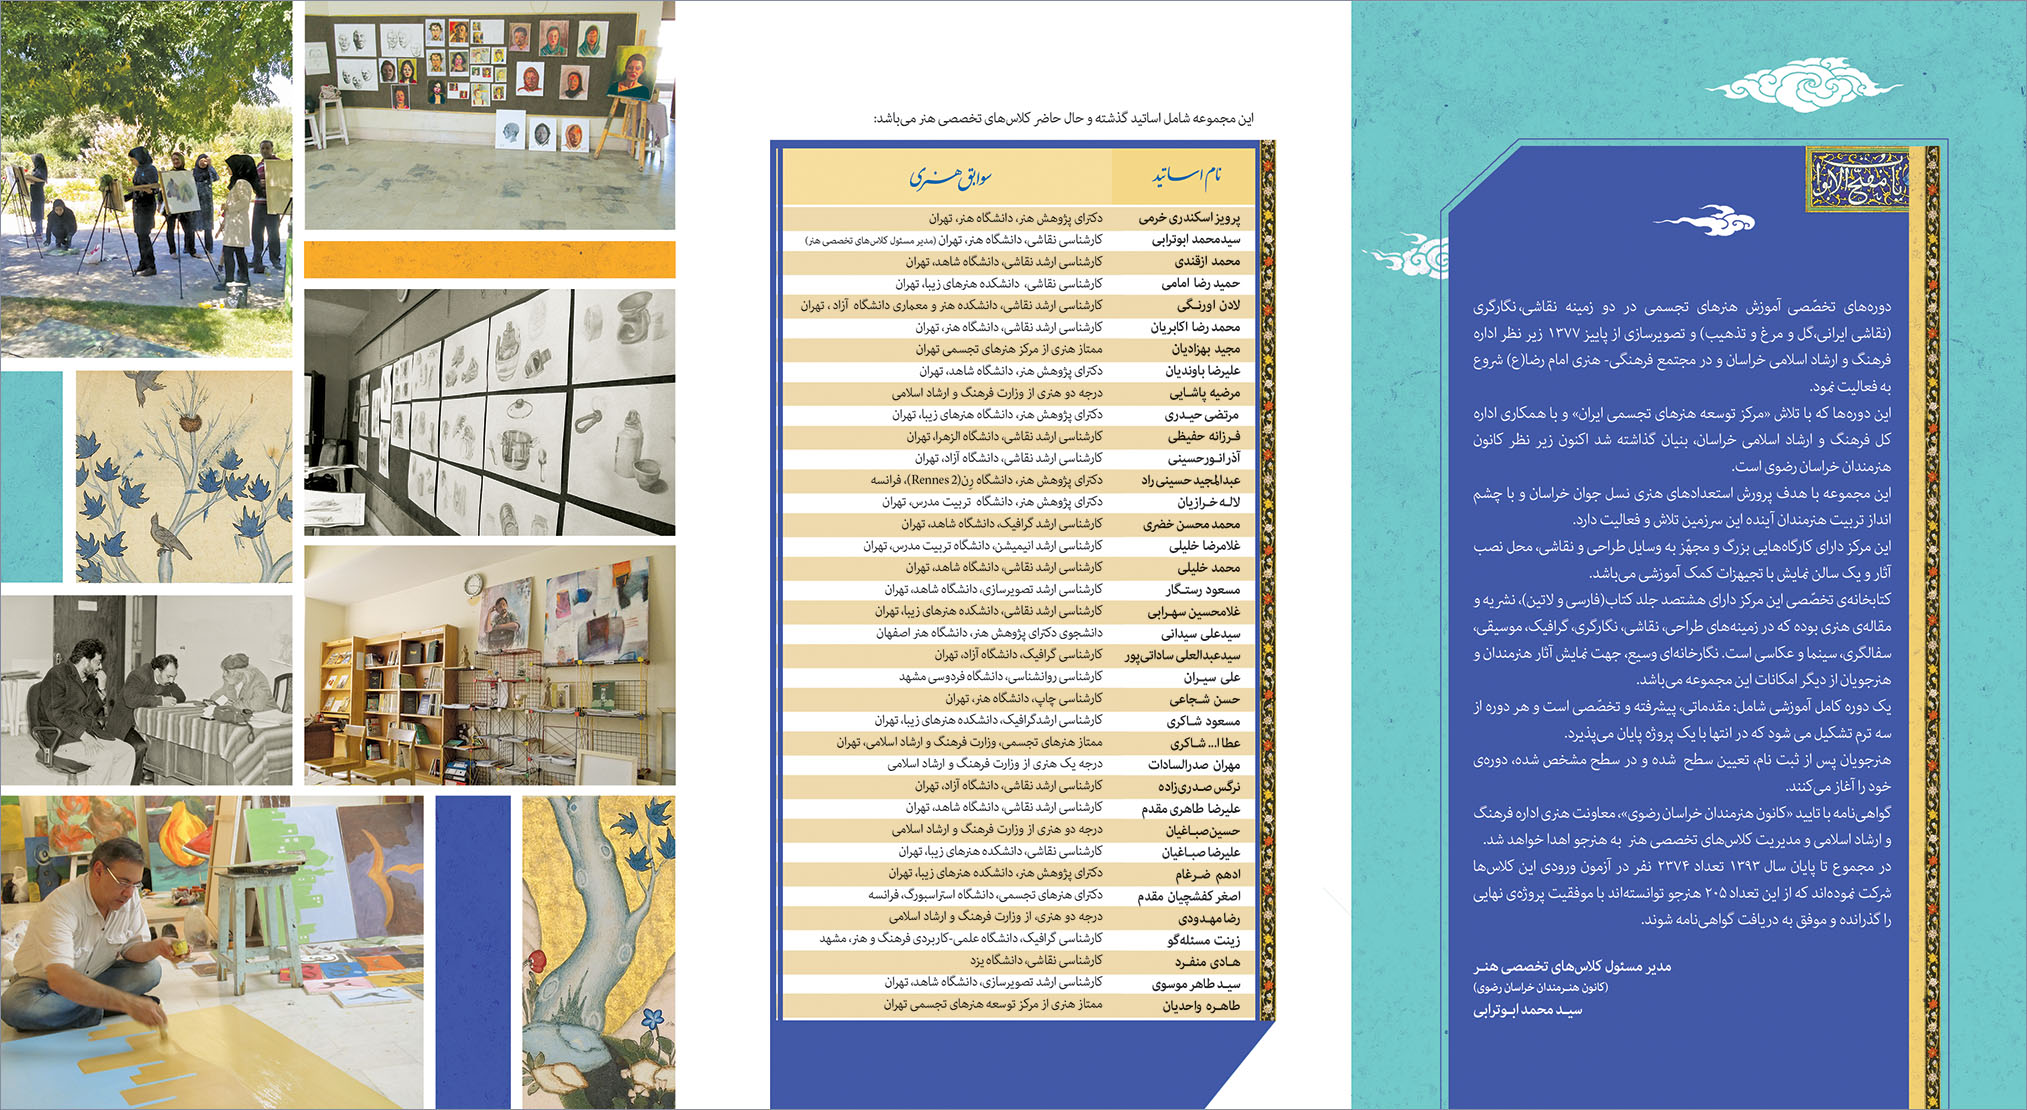 طراحی کاتالوگ مجتمع فرهنگی و هنری امام رضا مشهد توسط محمد محسن خضری